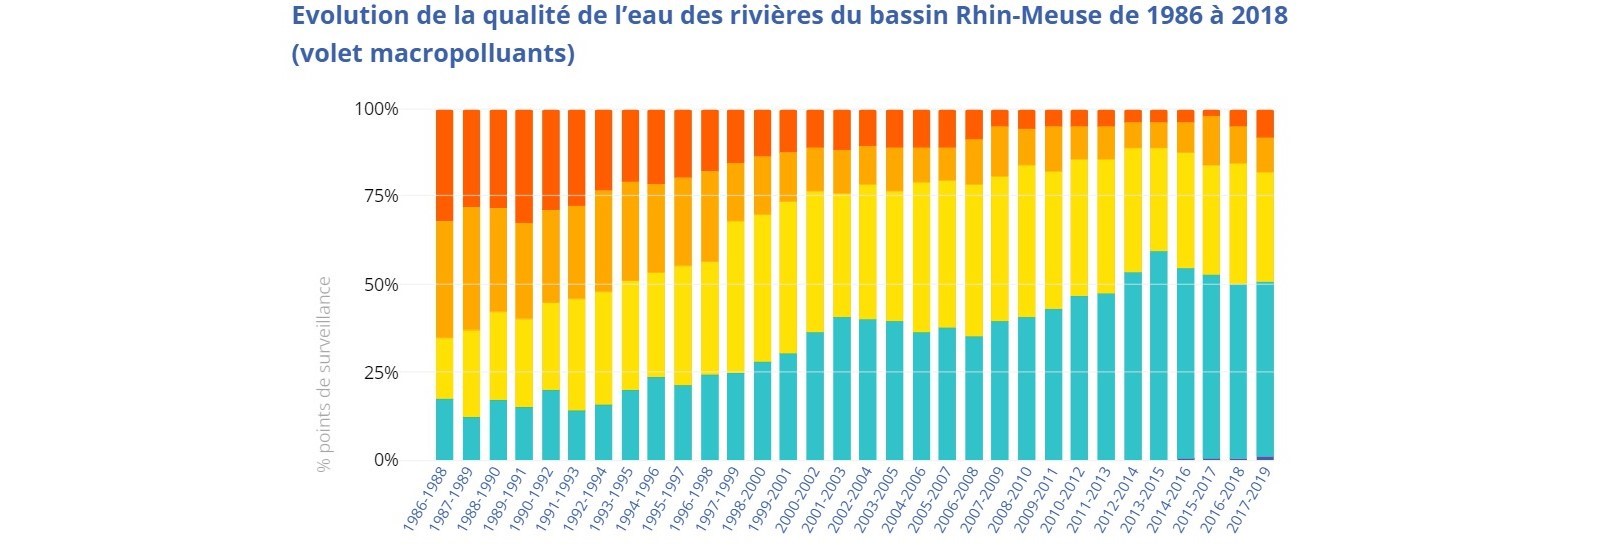 Tableau montrant l'amélioration de la qualité de l'eau du bassin Rhin-Meuse